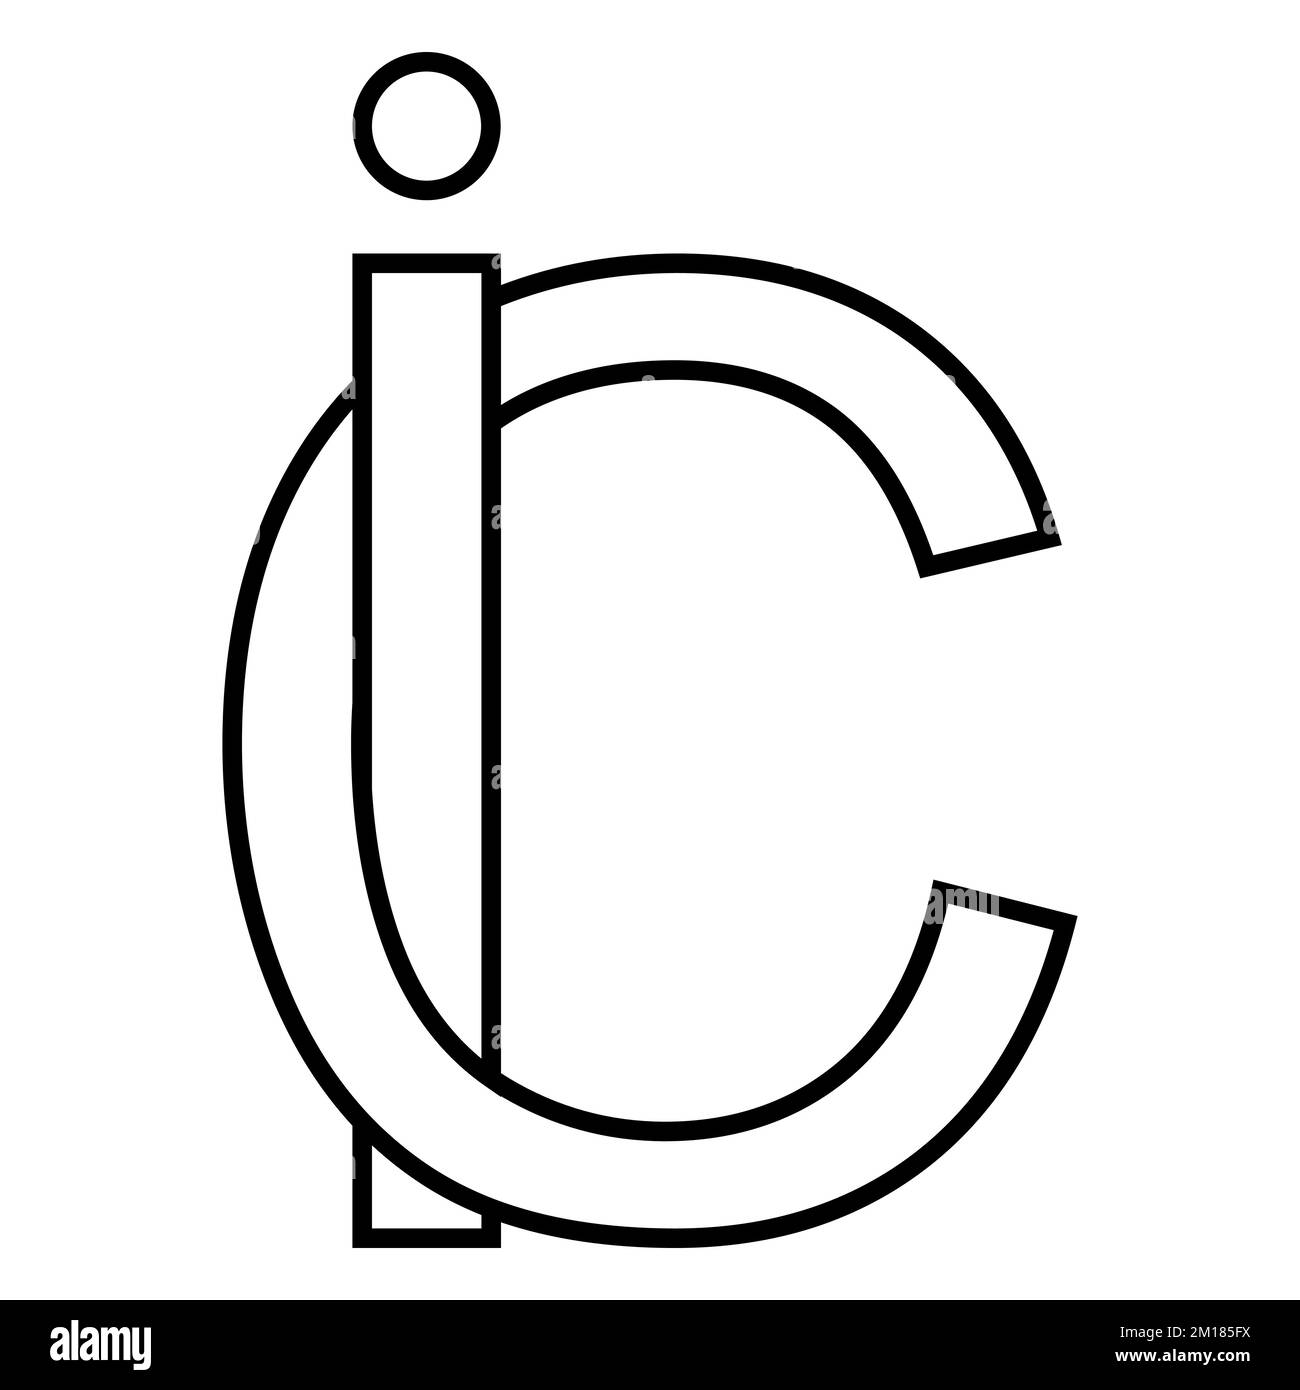 Logo signe ic ci icône nft lettres entrelacées i c Illustration de Vecteur